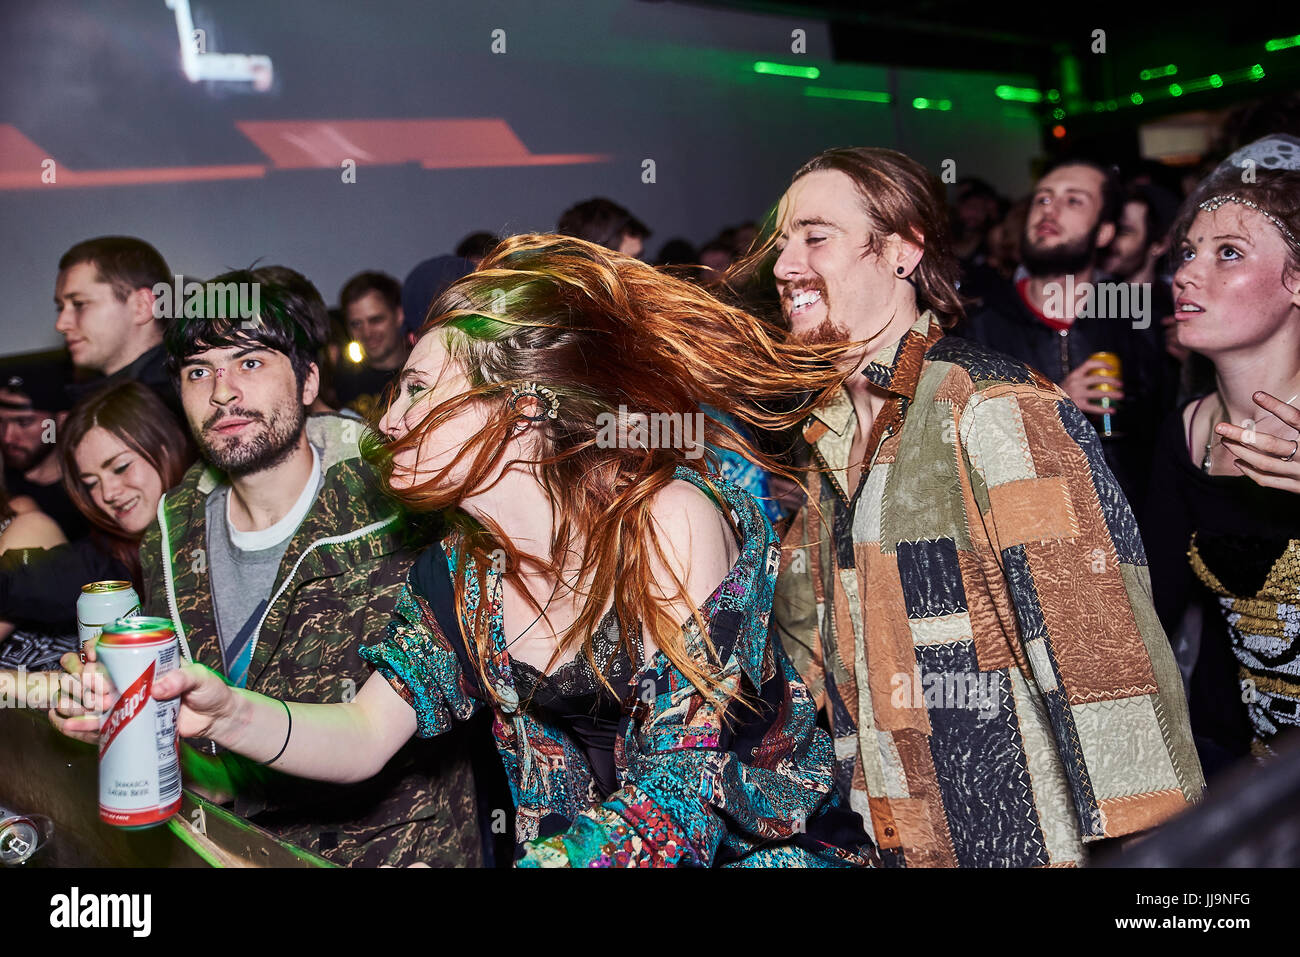 BRISTOL, UK - Décembre 2016 : un jeune, attractive woman's hair couvre en partie son visage alors qu'elle danse dans la foule dans une boîte de nuit le 4 décembre, 2016 Banque D'Images